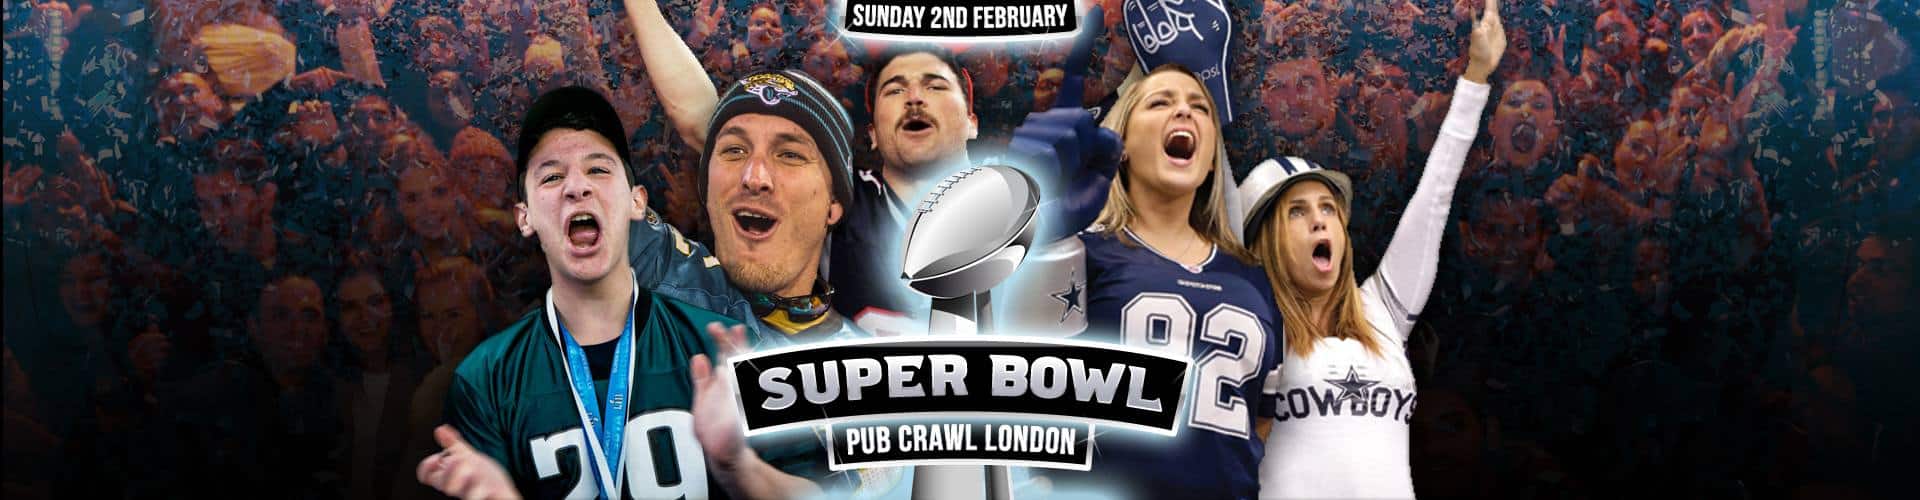 Super Bowl Pub Crawl BG